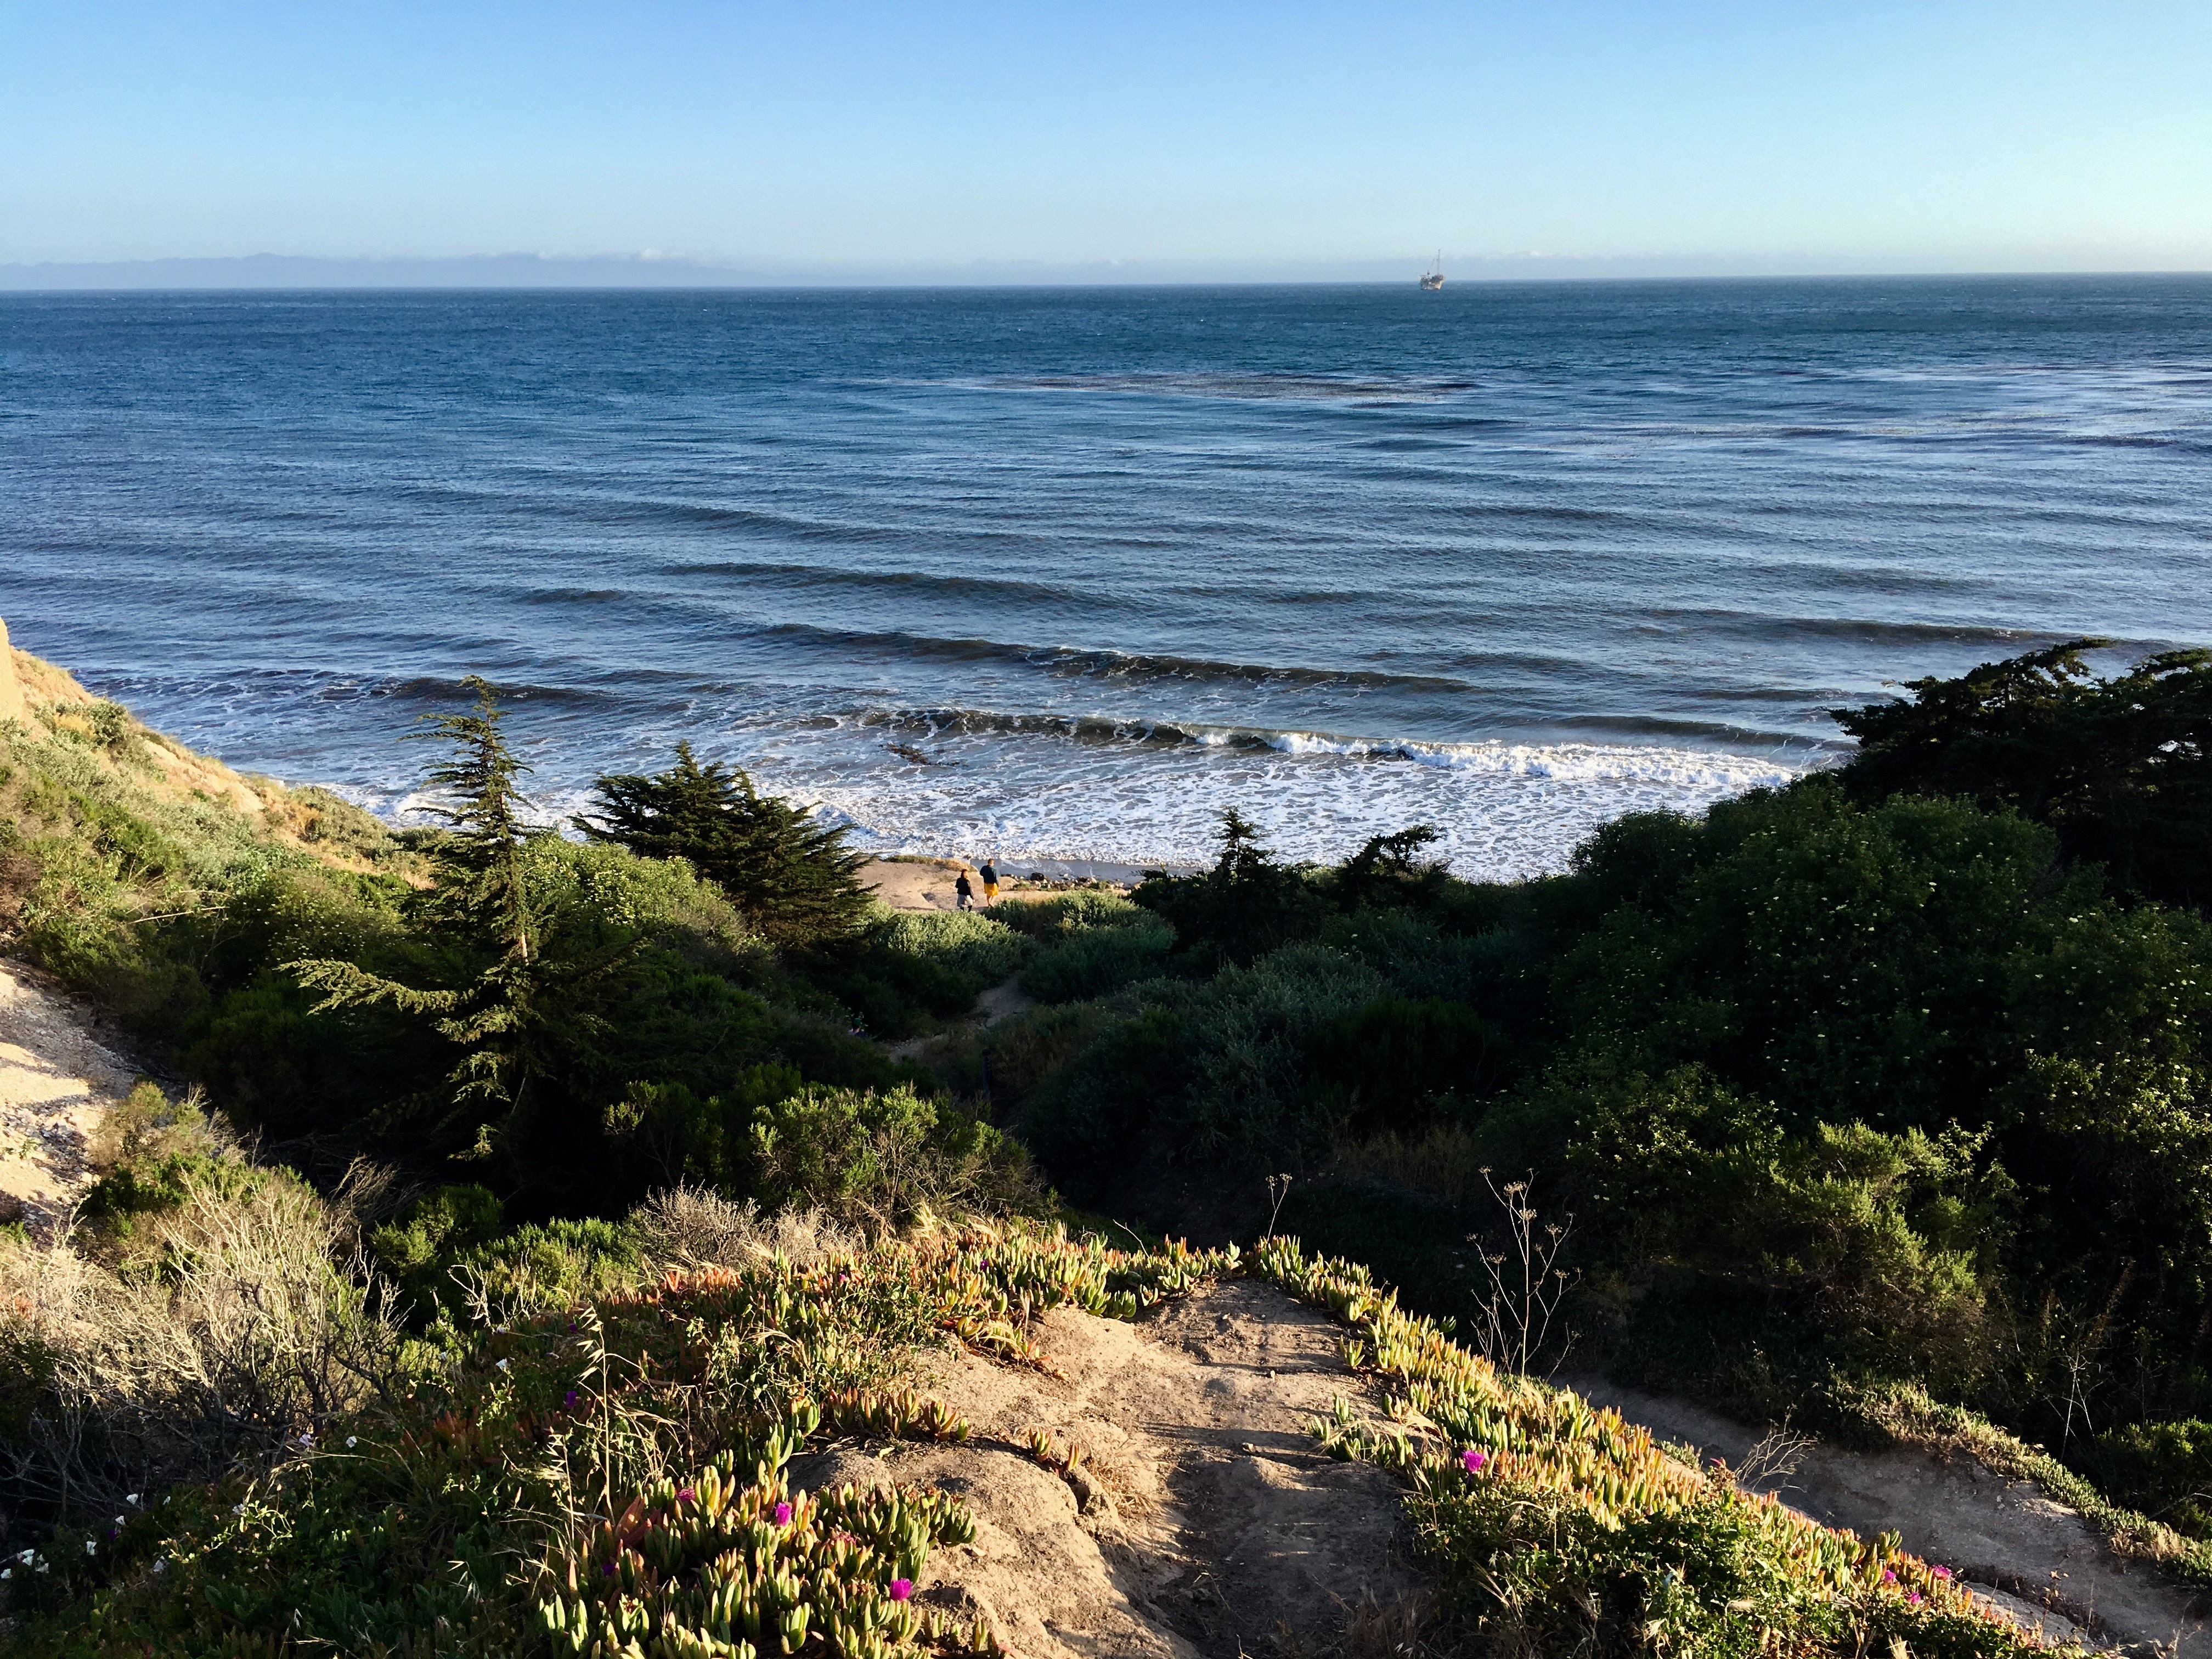 Pacific Ocean Santa Barbara, California 2018